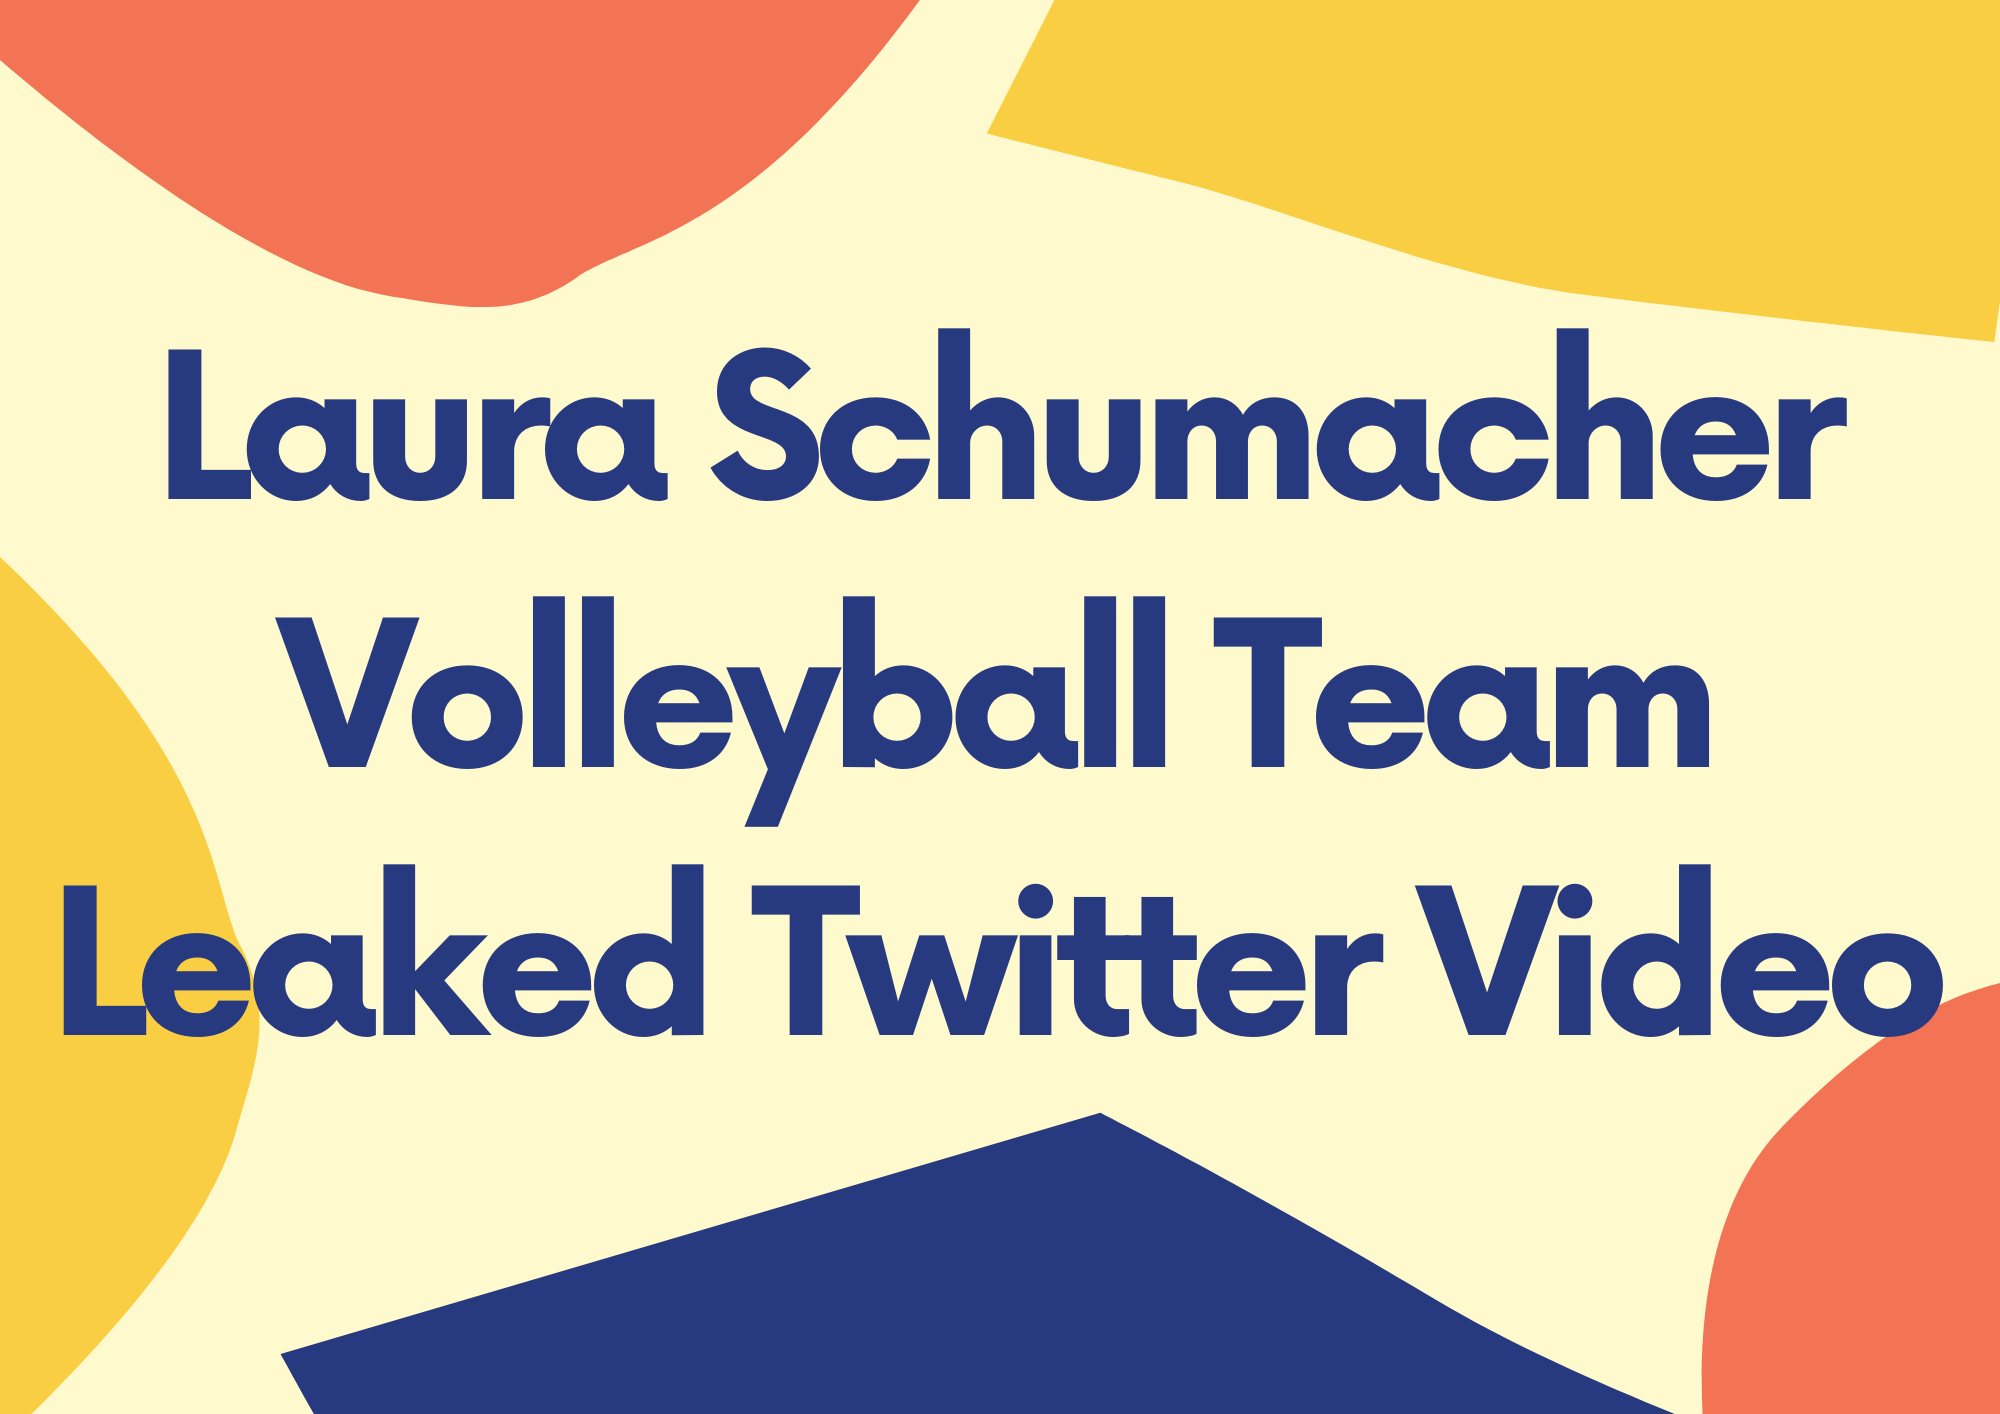 Laura Schumacher Volleyball Team Leaked Twitter Video